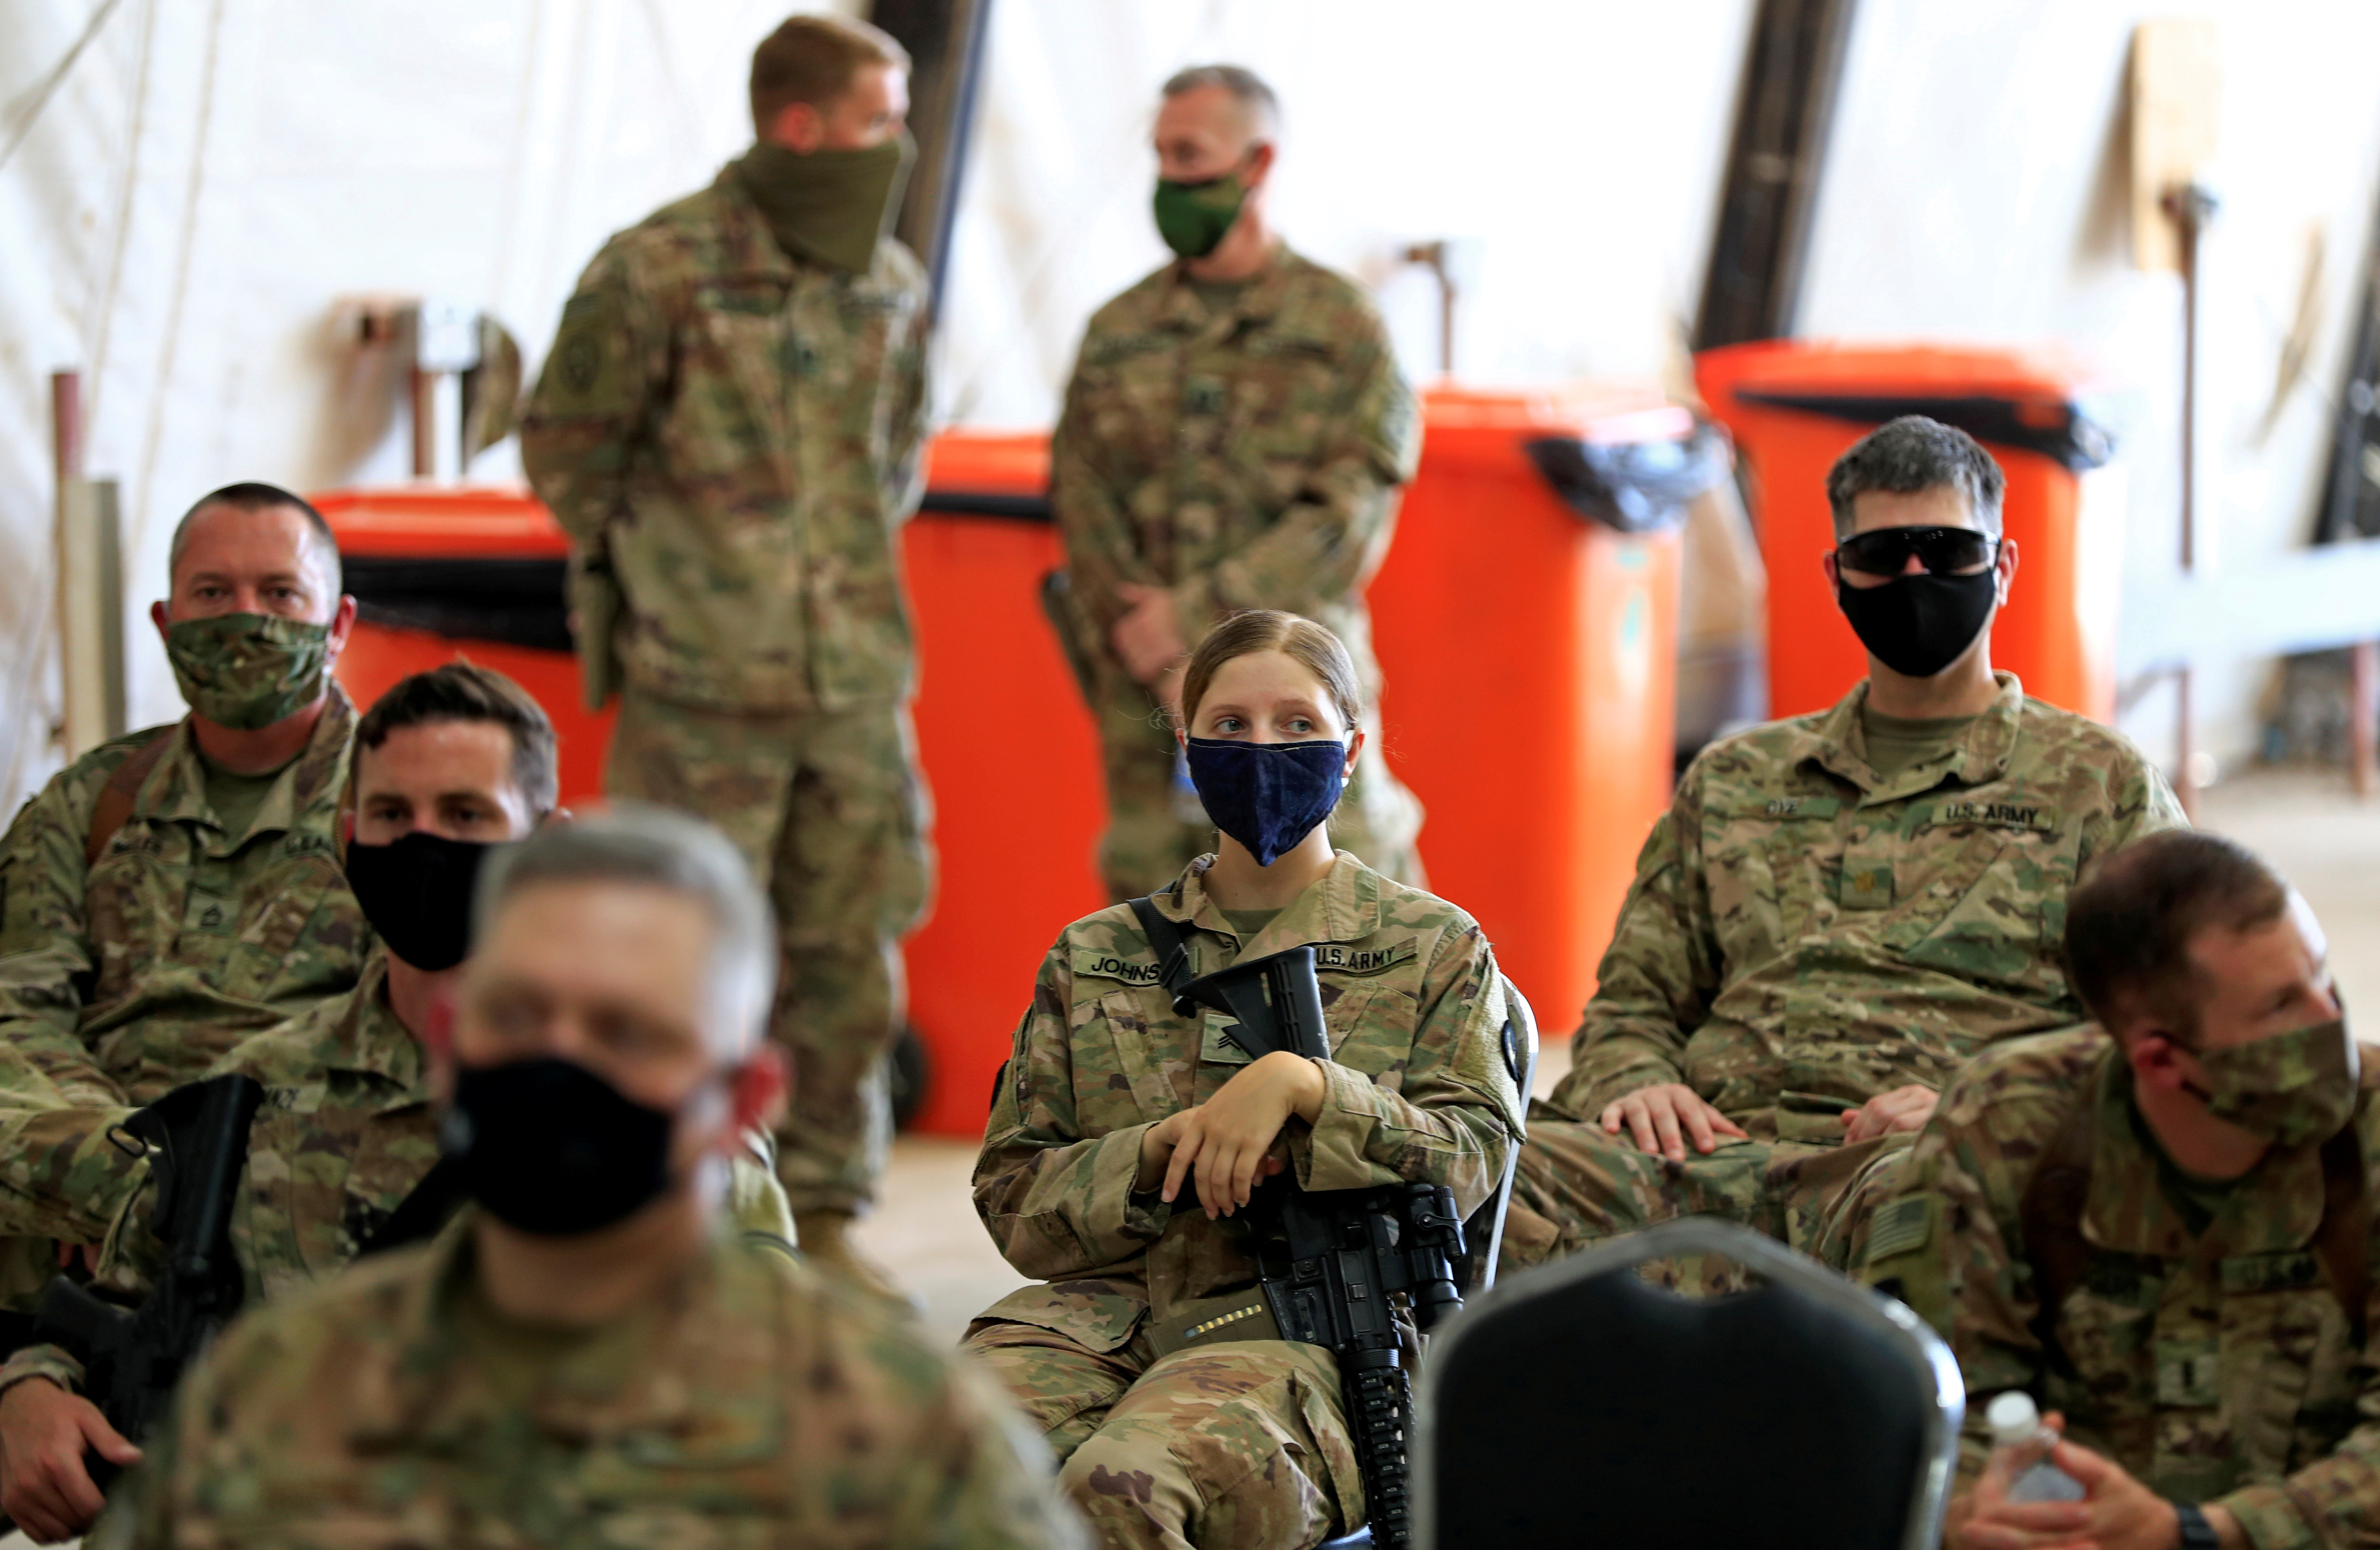 Des soldats américains portant des masques de protection sont vus lors d'une cérémonie de remise de la base militaire de Taji des troupes de la coalition dirigée par les États-Unis aux forces de sécurité irakiennes, dans la base au nord de Bagdad, en Irak, le 23 août 2020. REUTERS/Thaier Al-Sudani/File Photo